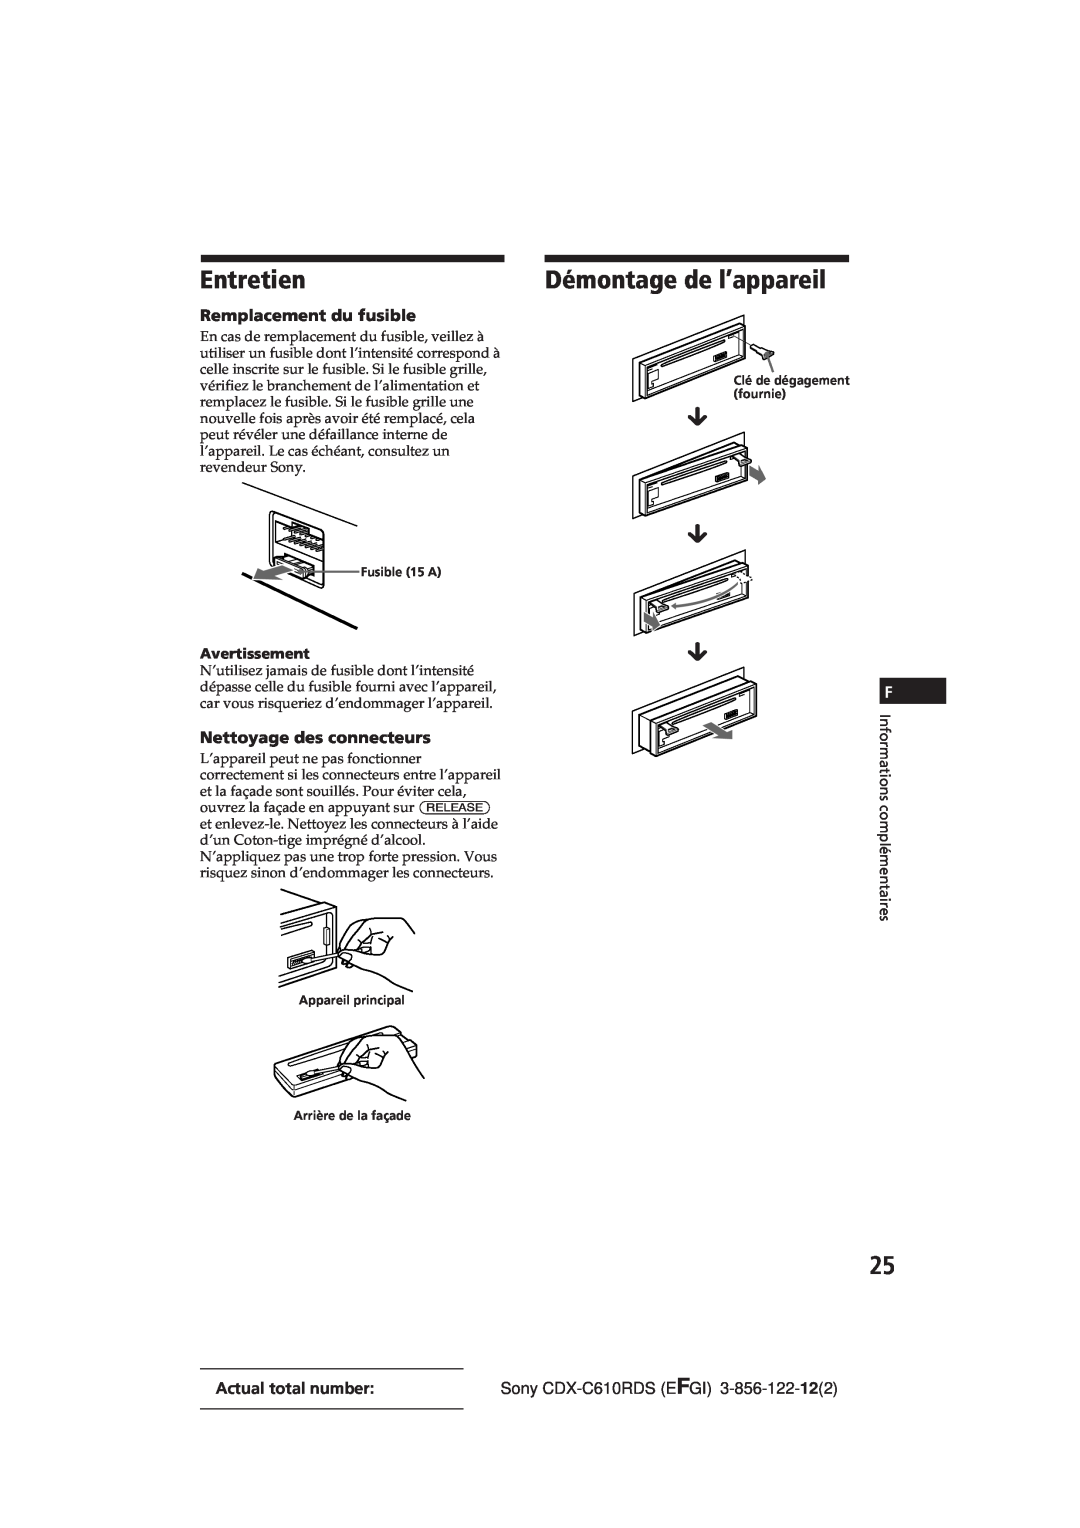 Sony CDX-C610RDS manual Entretien, Démontage de l’appareil, Remplacement du fusible, Nettoyage des connecteurs, µ µ µ 